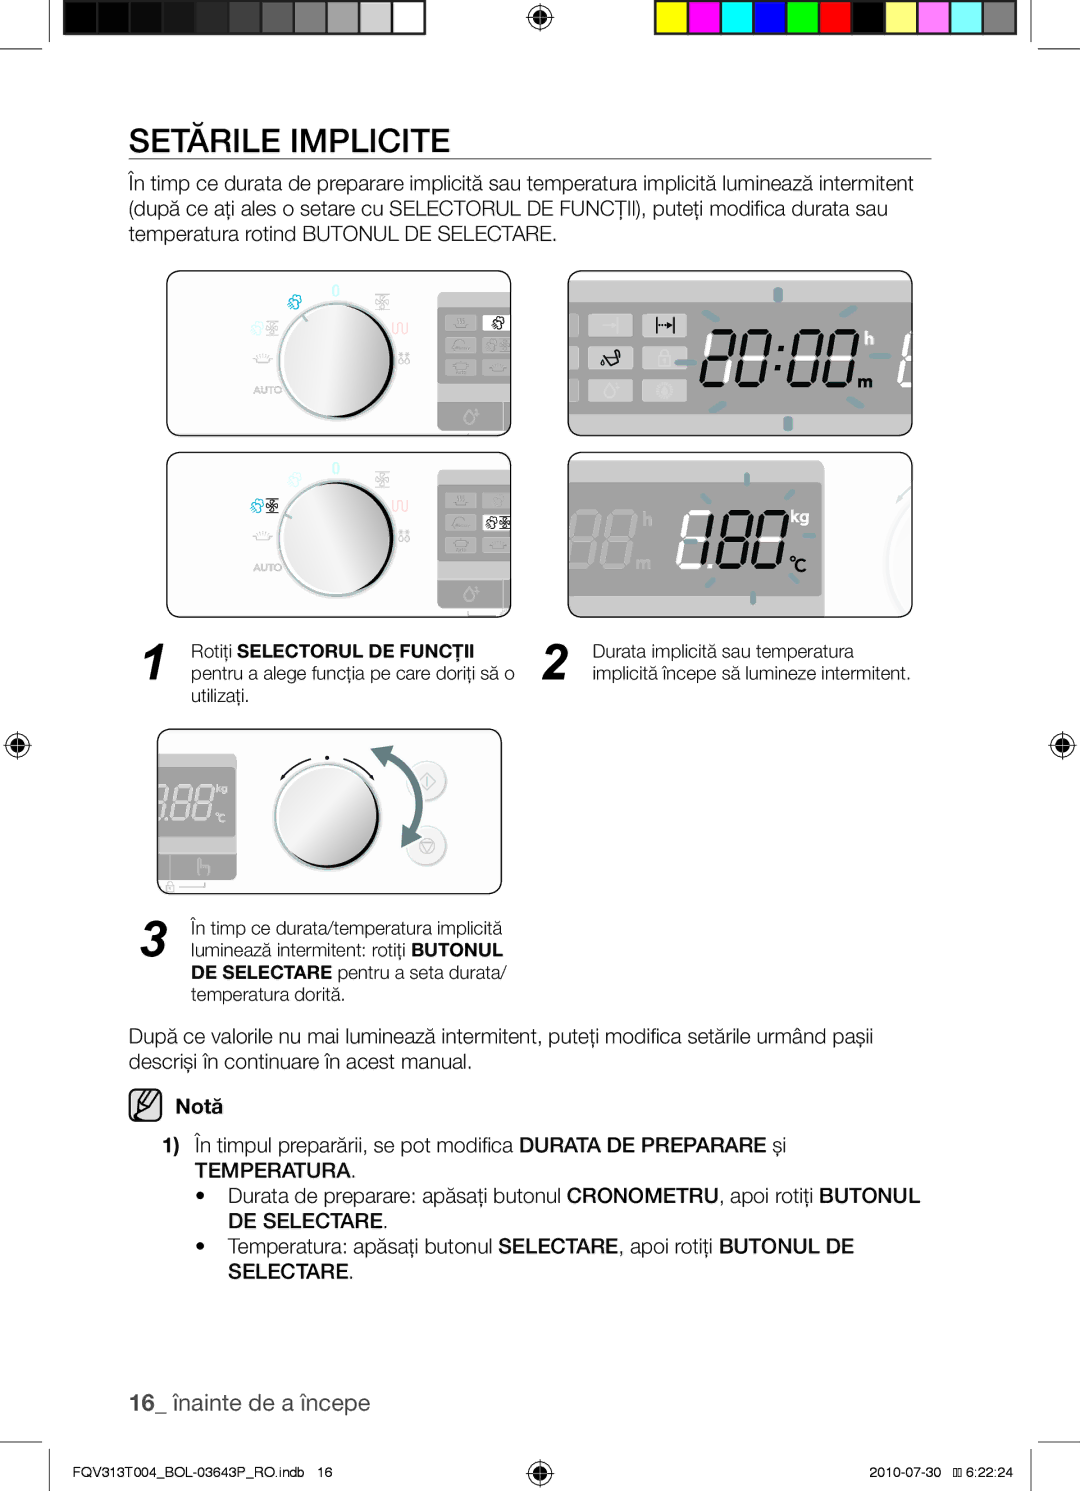 Samsung FQV313T004/BOL manual 16 înainte de a începe, În timpul preparării, se pot modifica Durata DE Preparare şi 